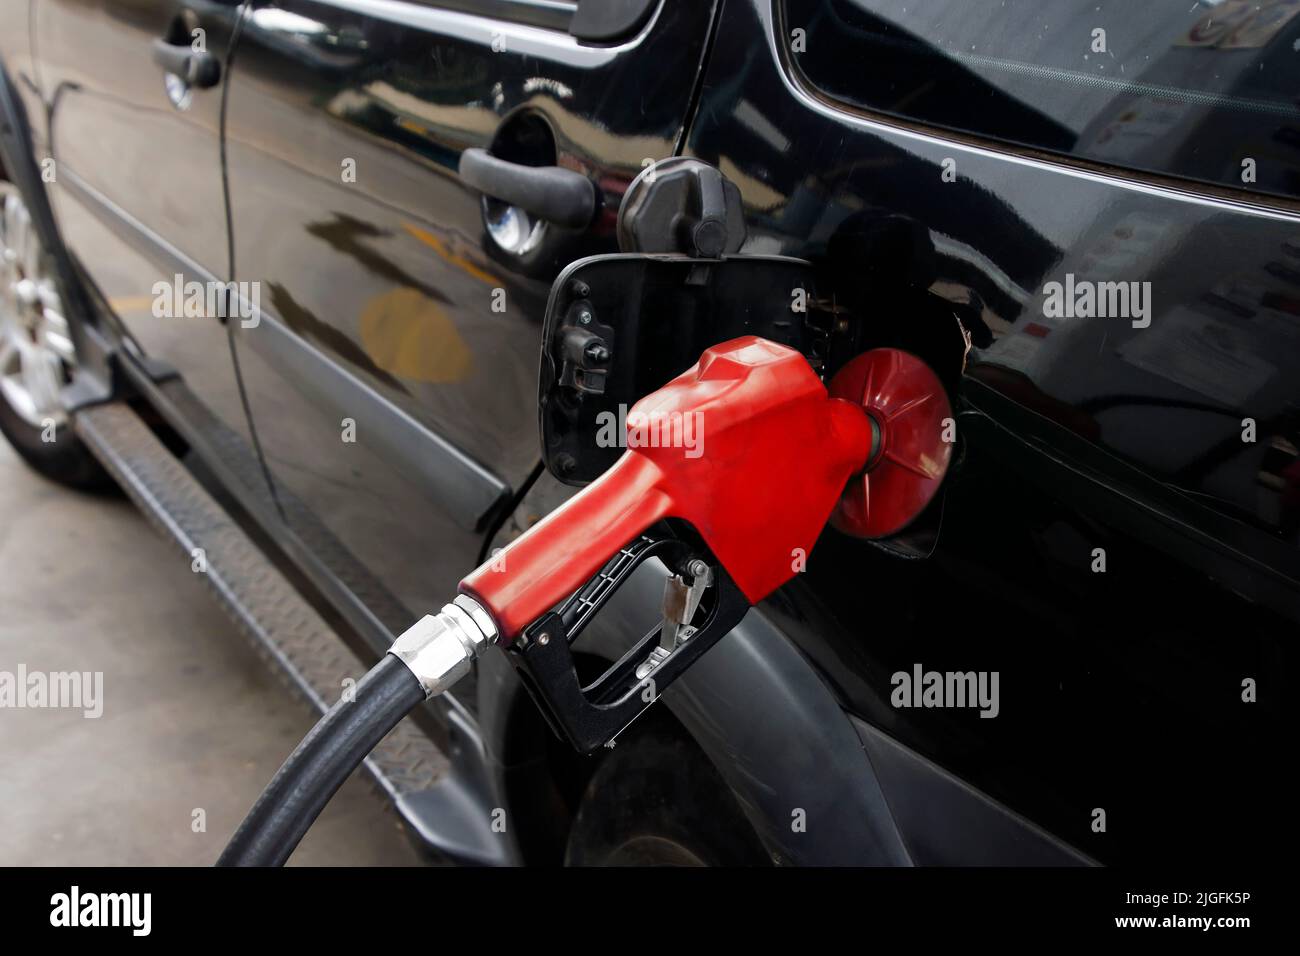 gasolina al repostar un vehículo en una gasolinera Foto de stock